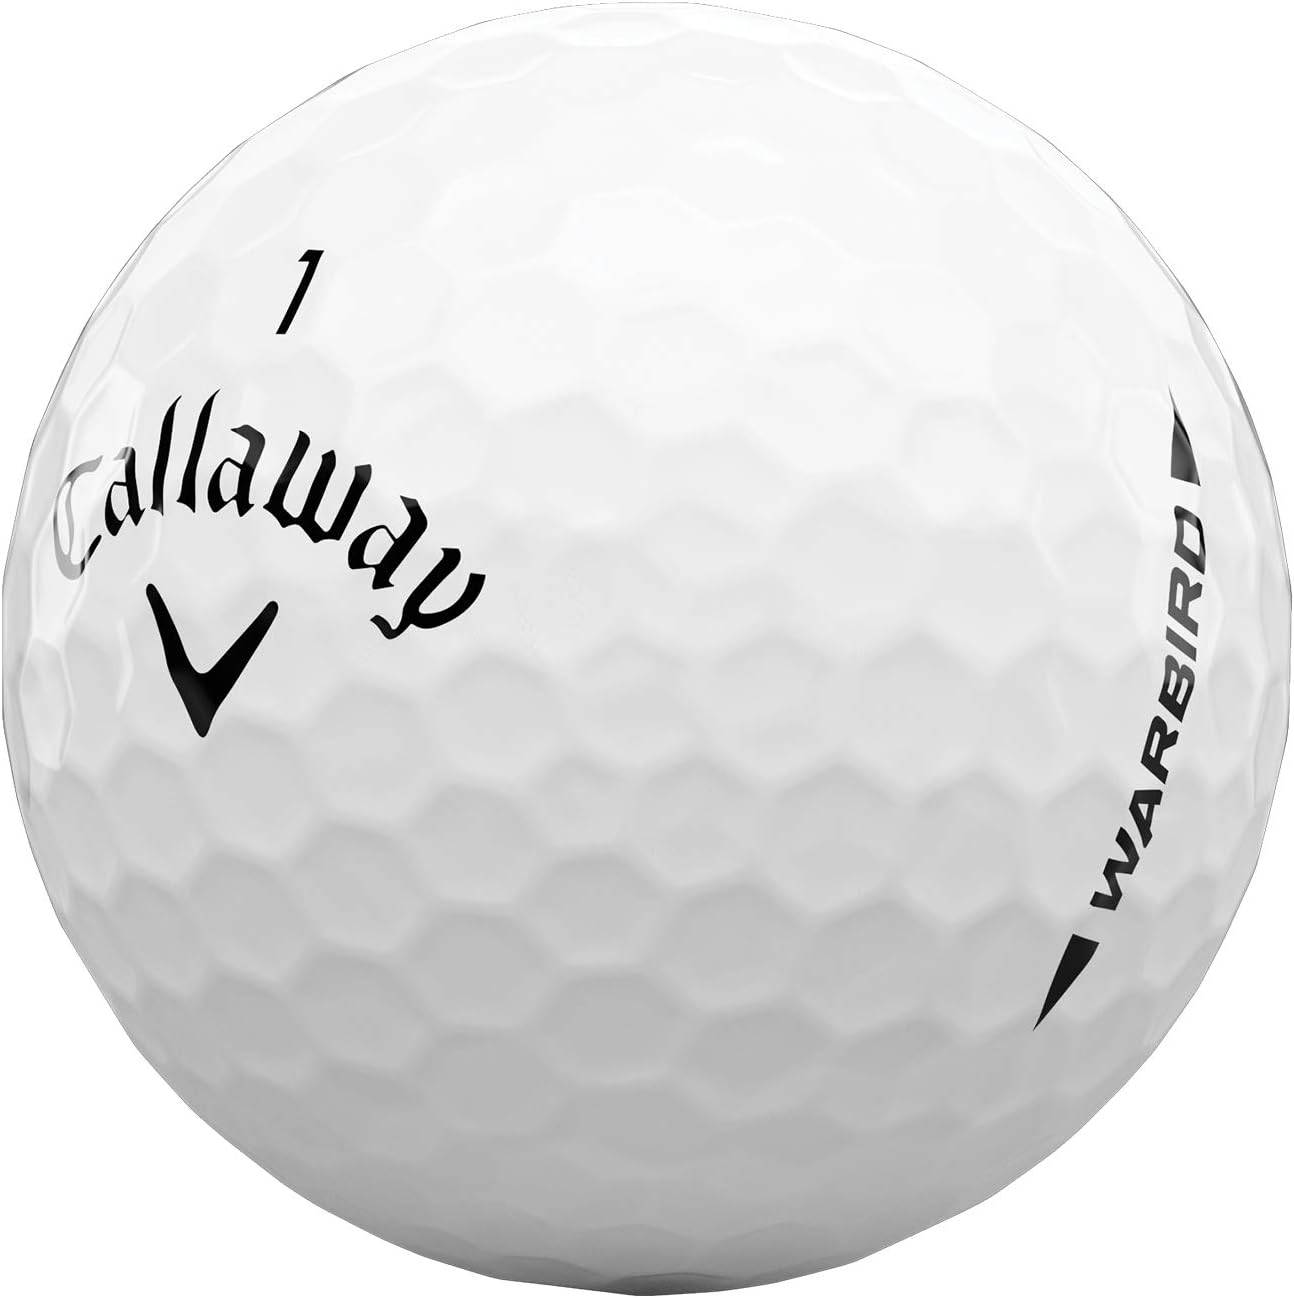 Callaway Golf Warbird Golf Balls 2021